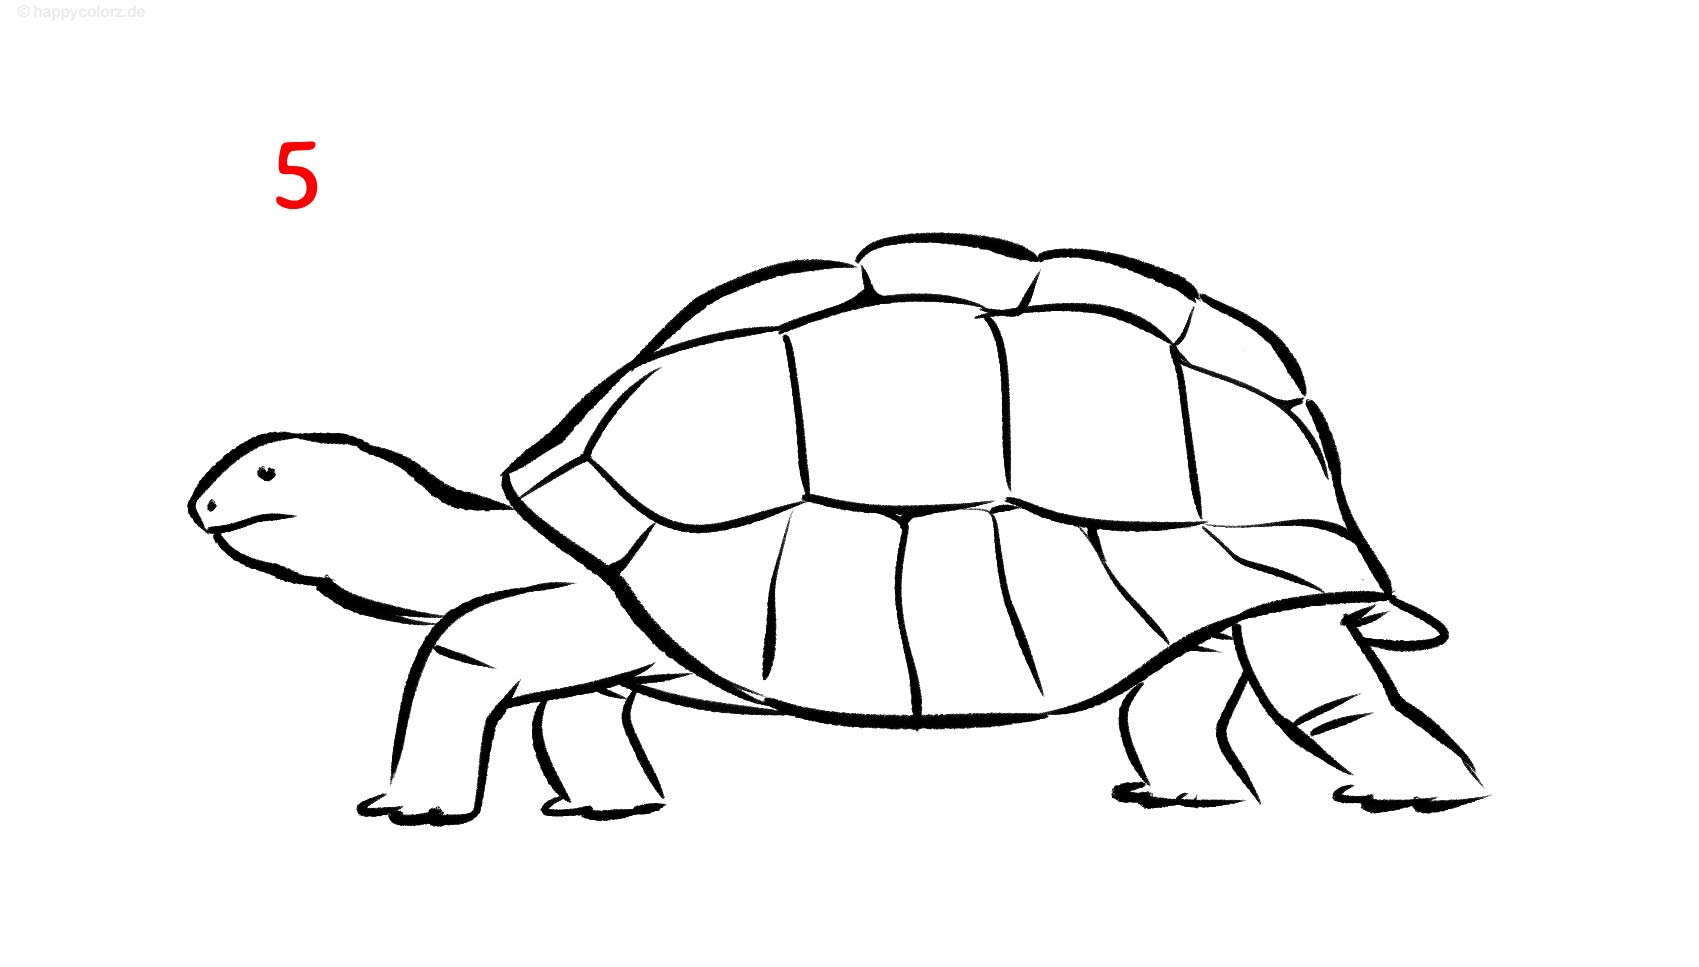 Schildkröte zeichnen - Schritt für Schritt